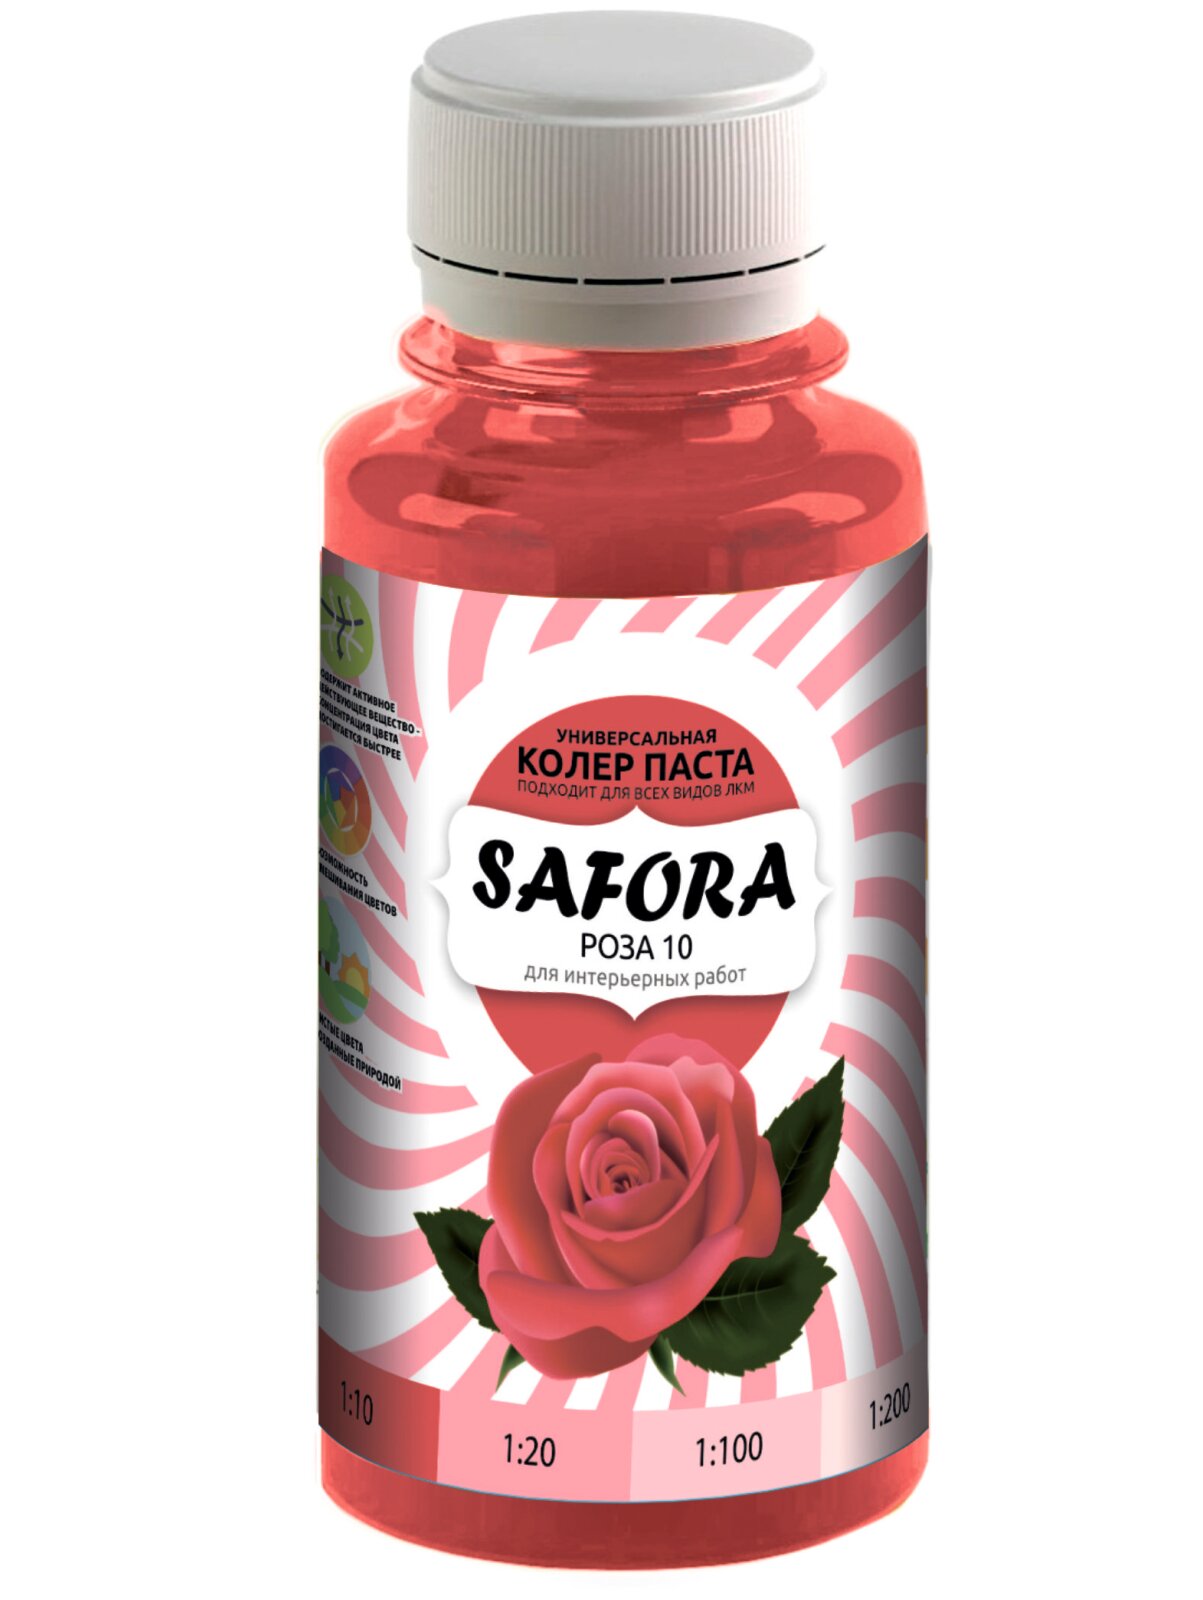 Колеровочная паста 10 роза колер красный SAFORA 100мл колер для краски штукатурки и других материалов колер паста